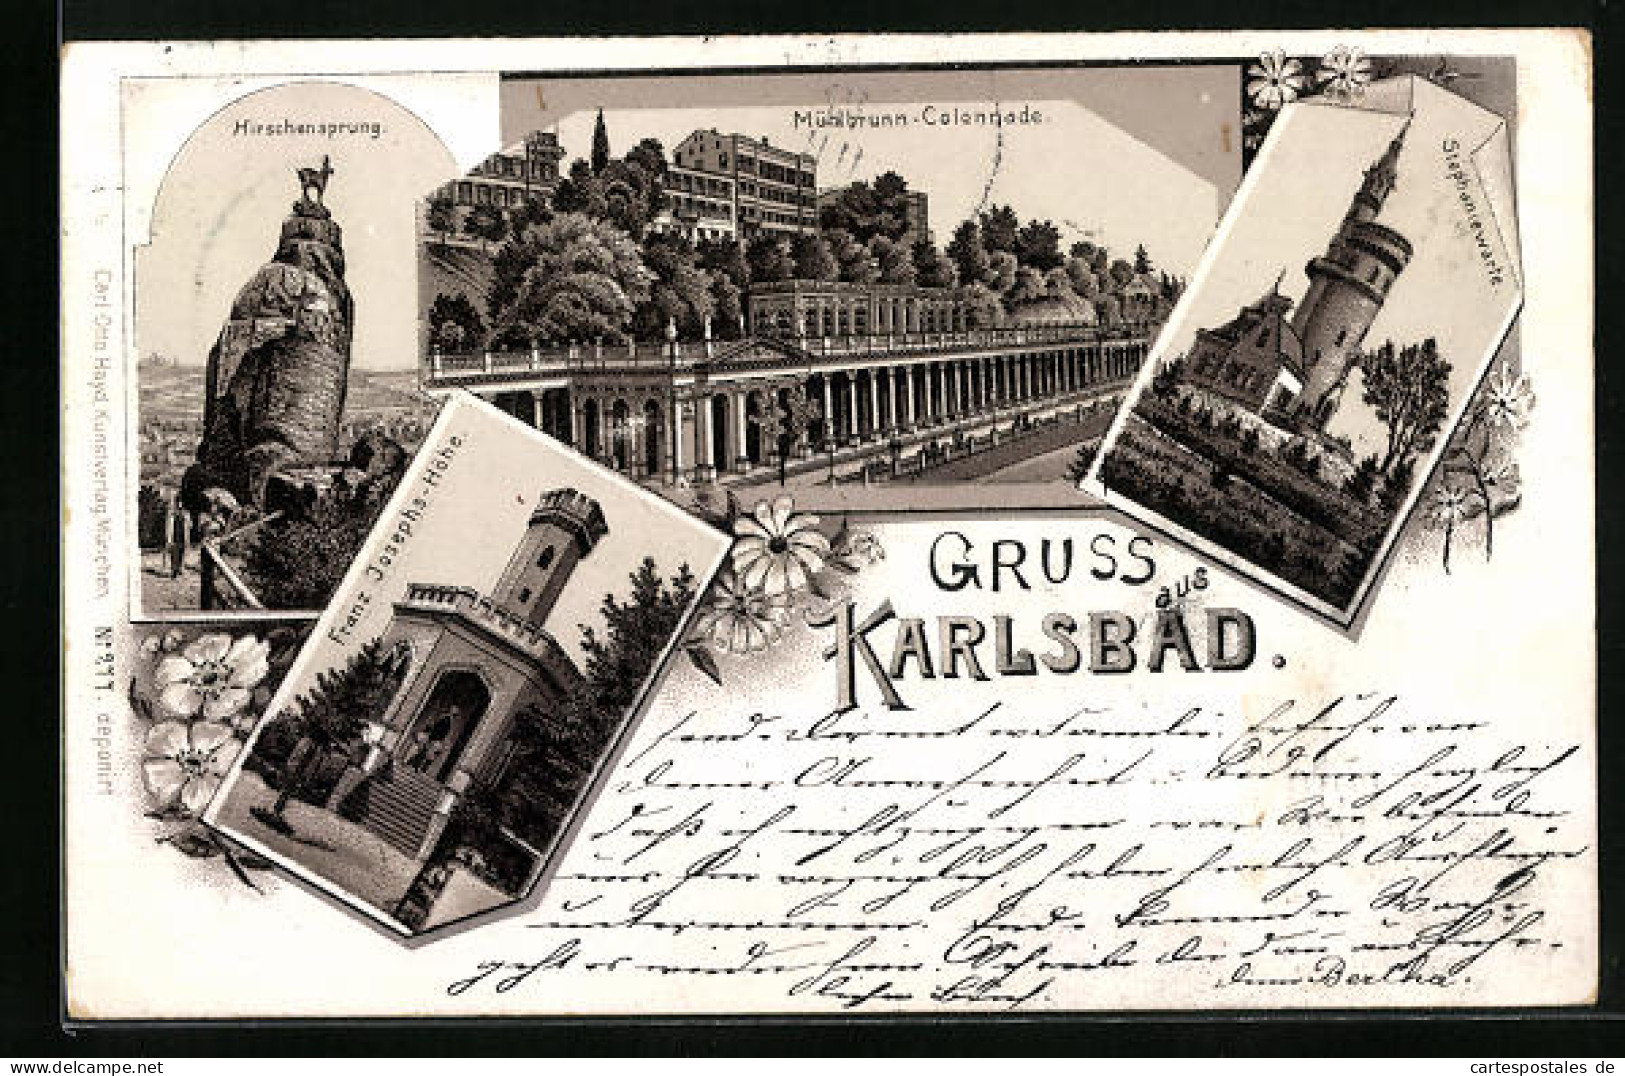 Lithographie Karlsbad, Mühlbrunn-Colonnade, Franz Josephs-Höhe, Hirschensprung  - Czech Republic